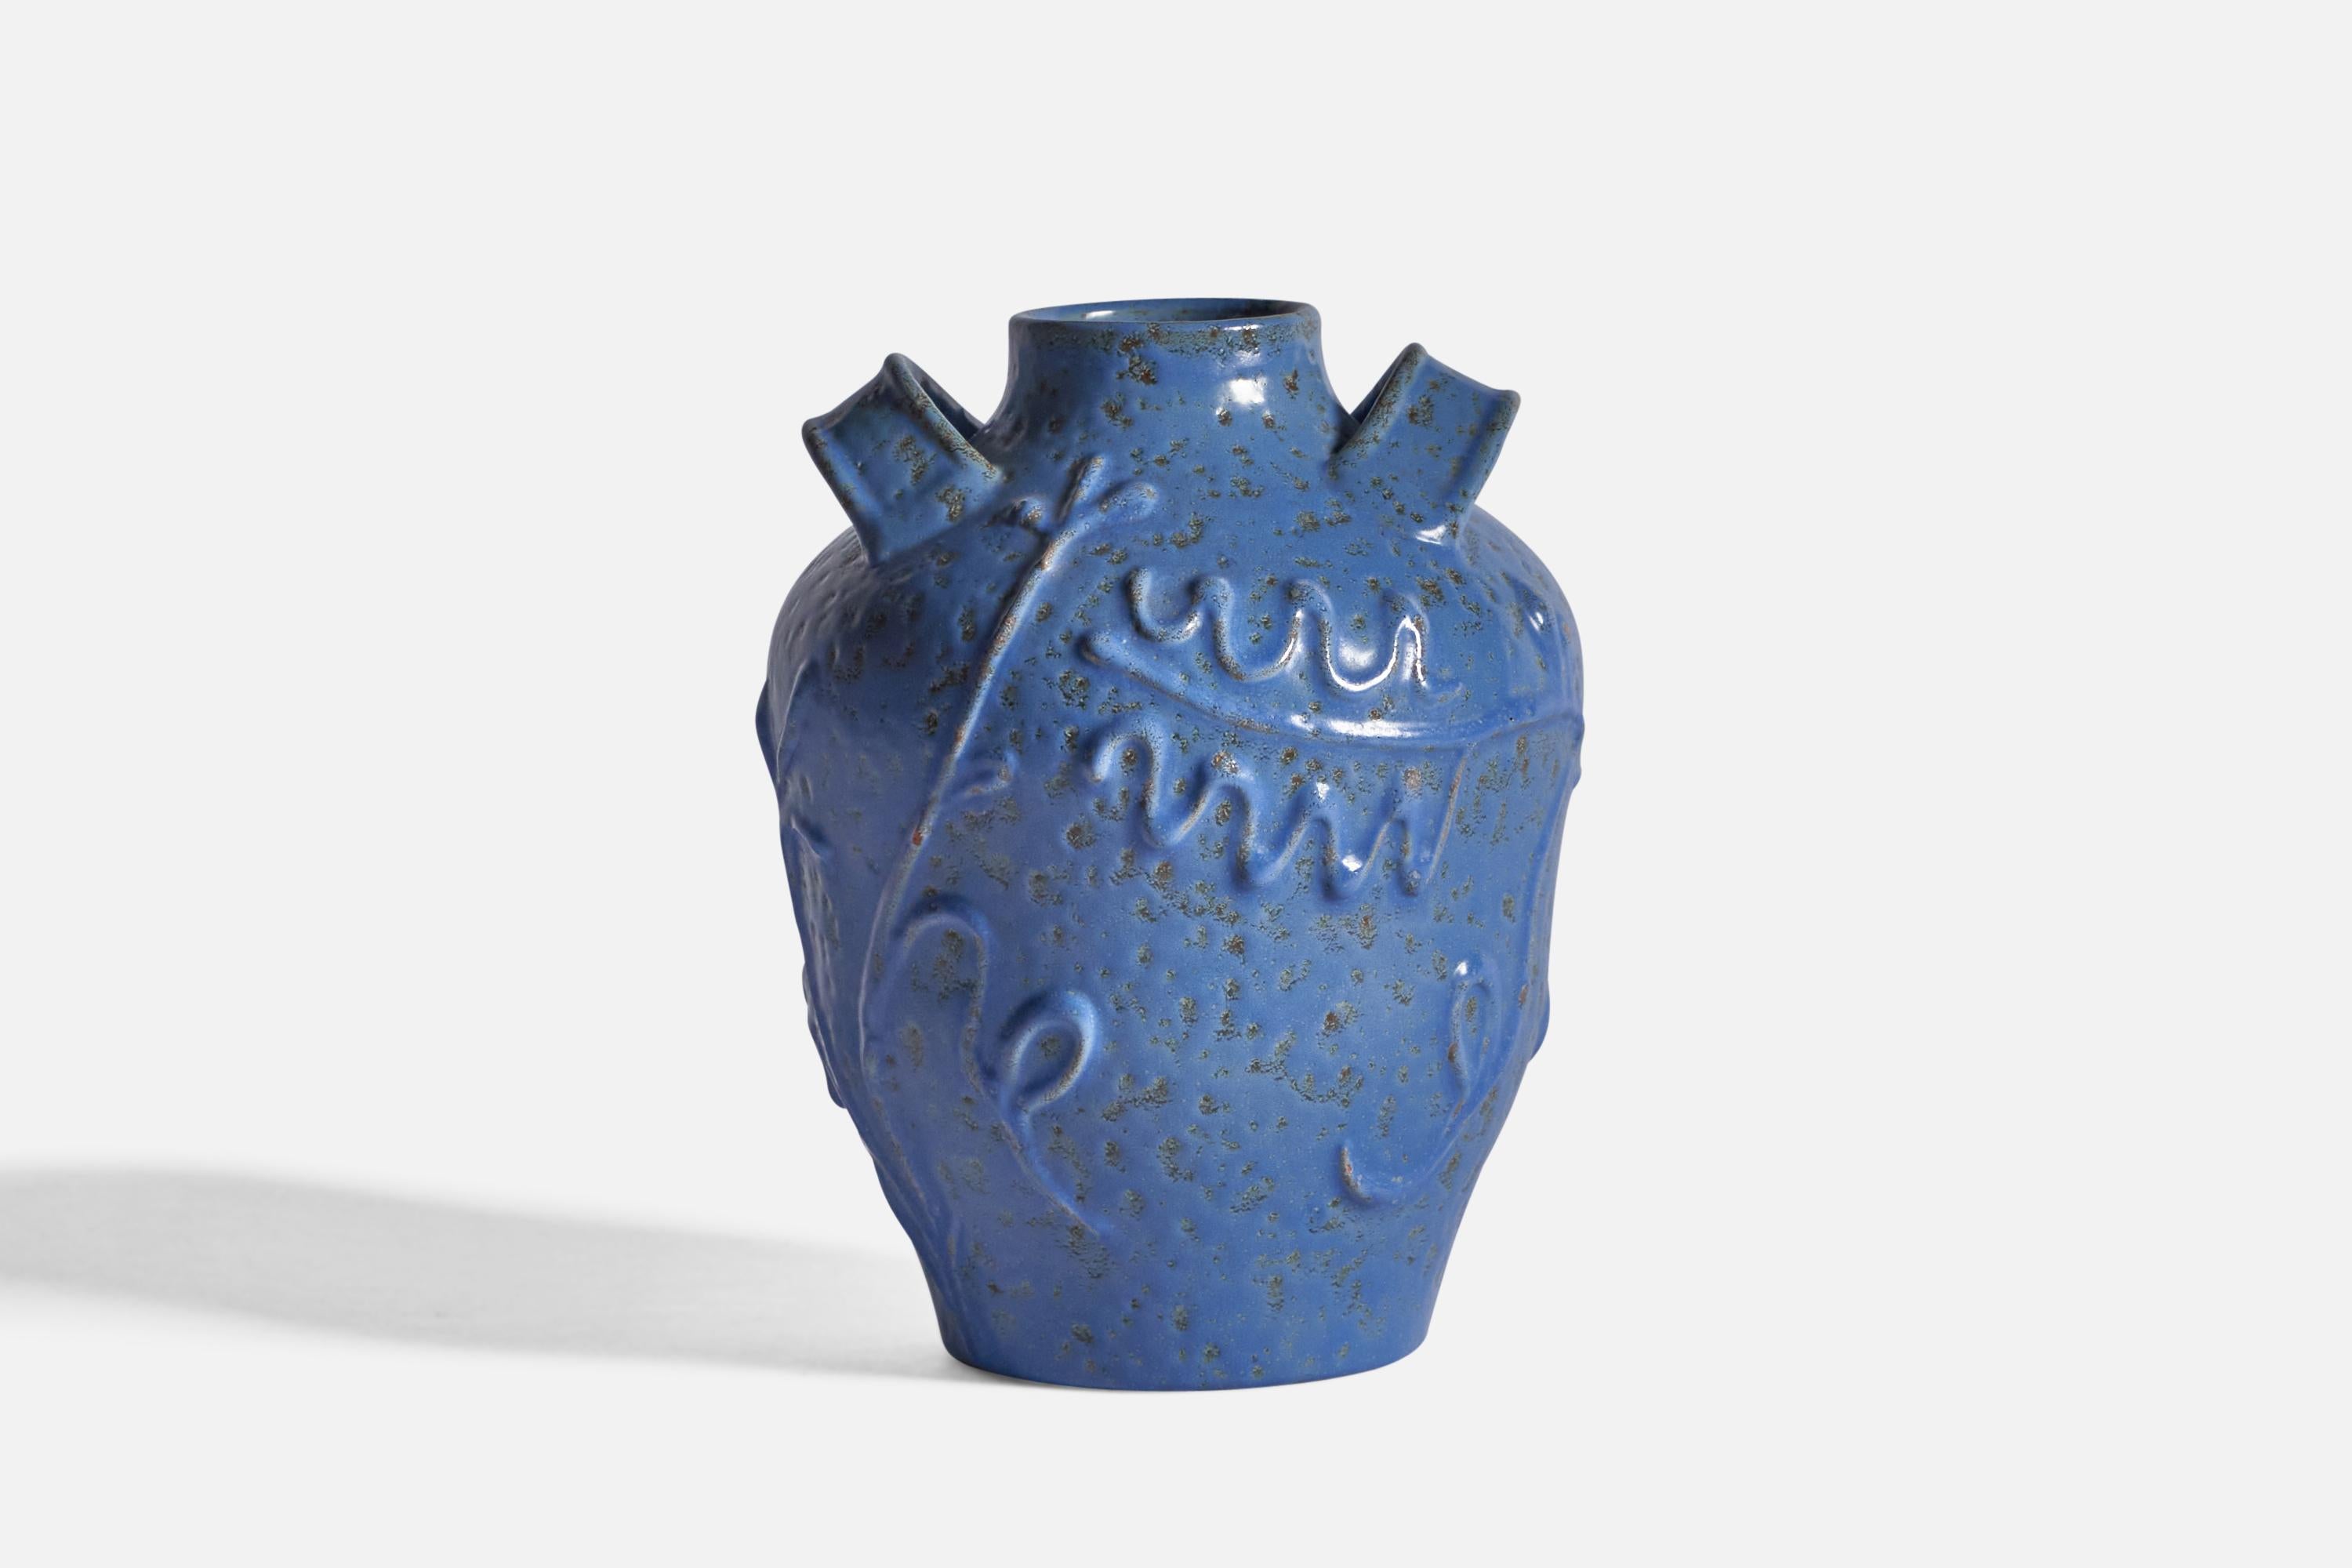 Vase aus blau glasiertem Steingut mit Reliefornamenten, Entwurf und Produktion: Nittsjö, Schweden, 1940er Jahre.